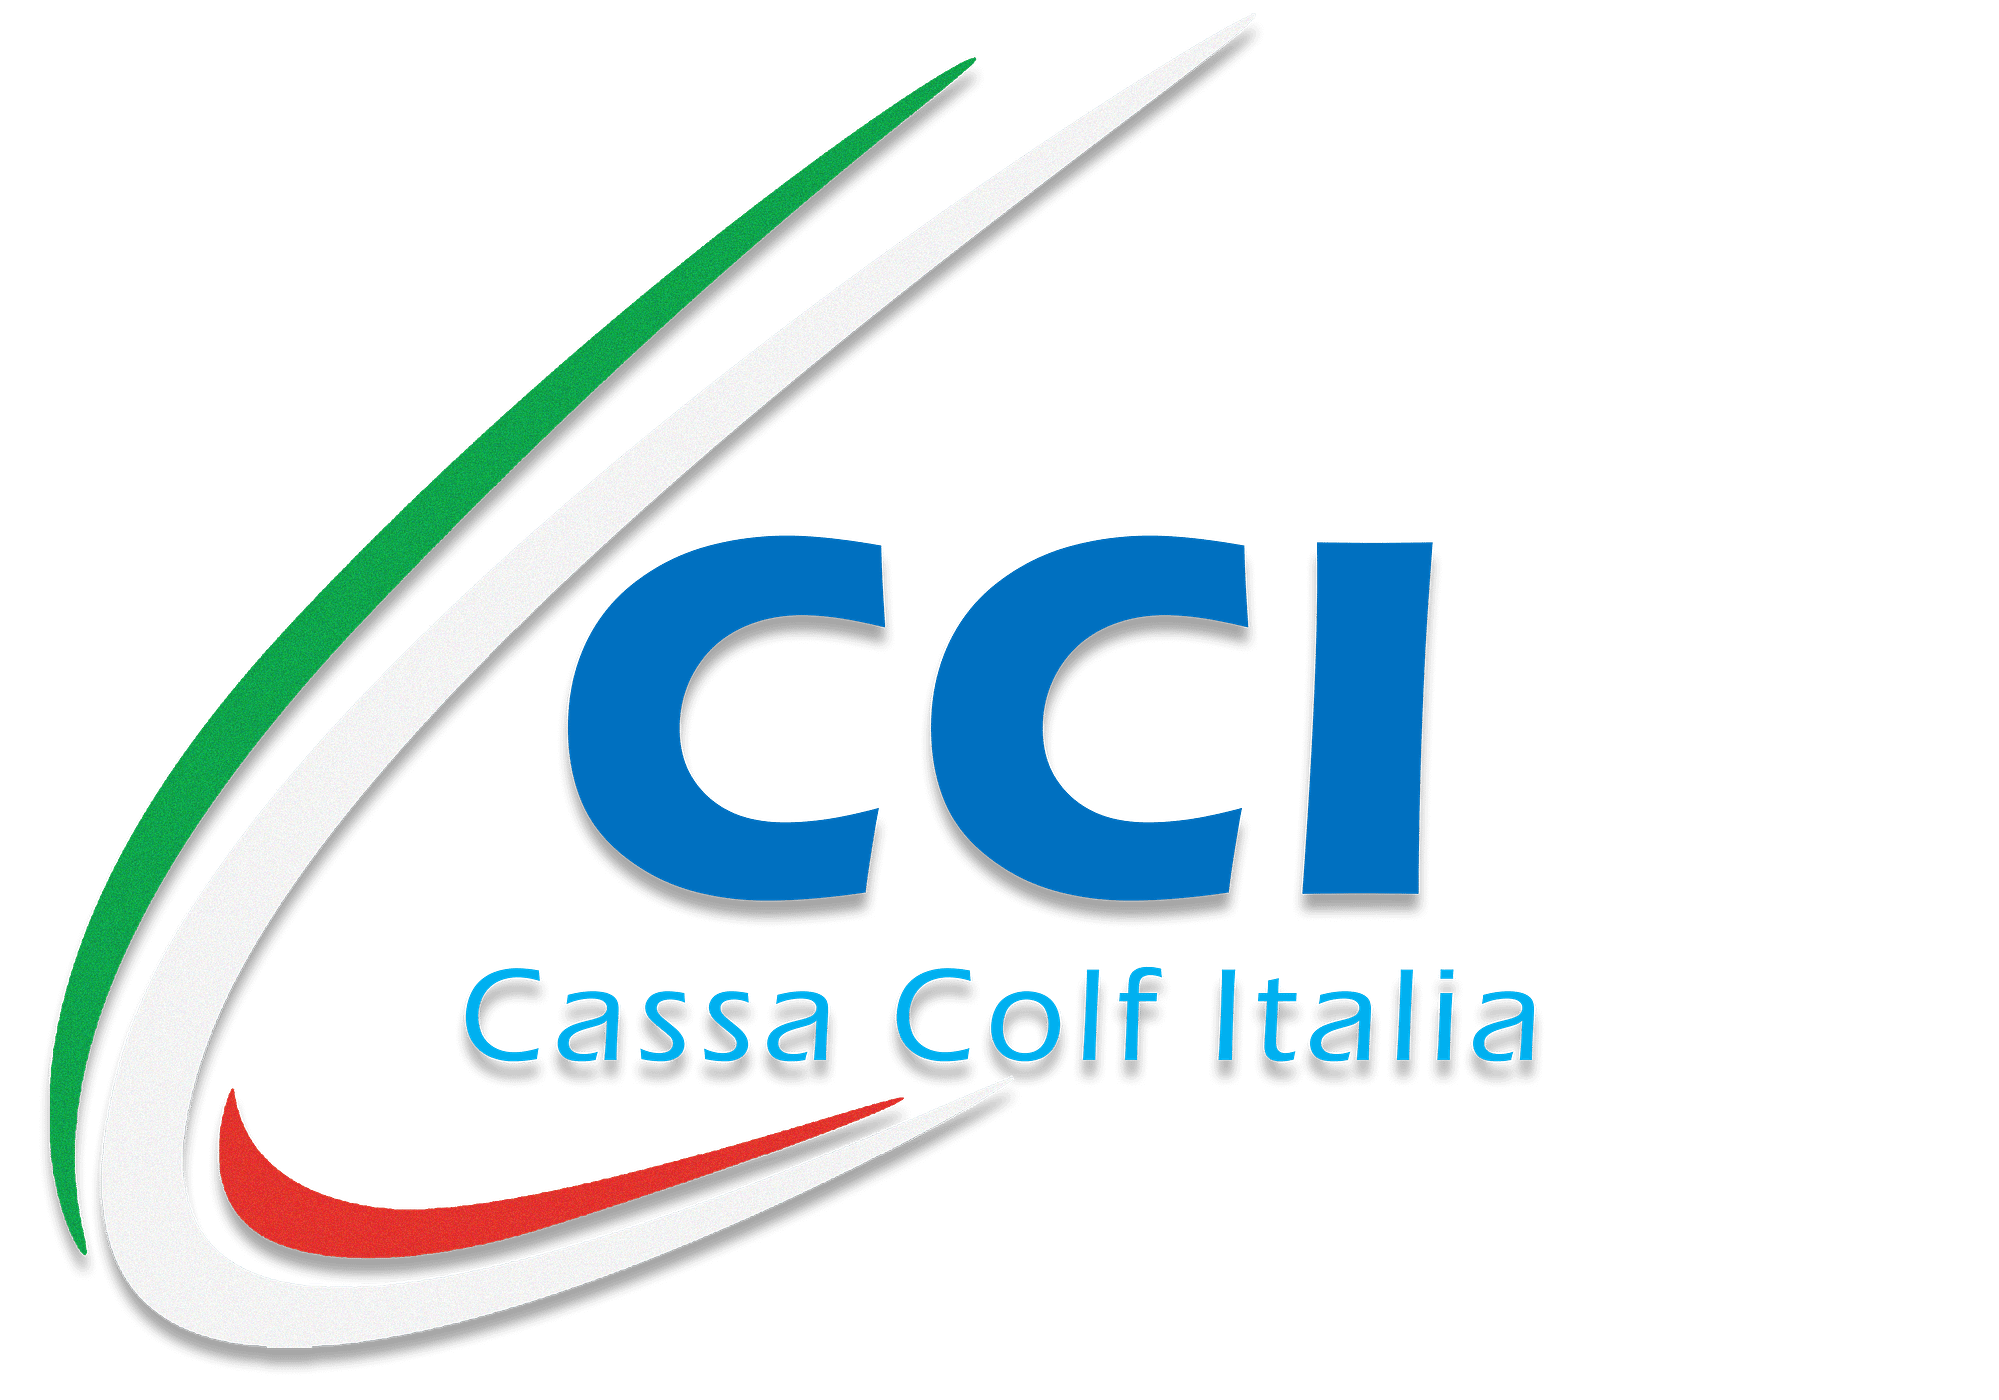 Cassa Colf Italia